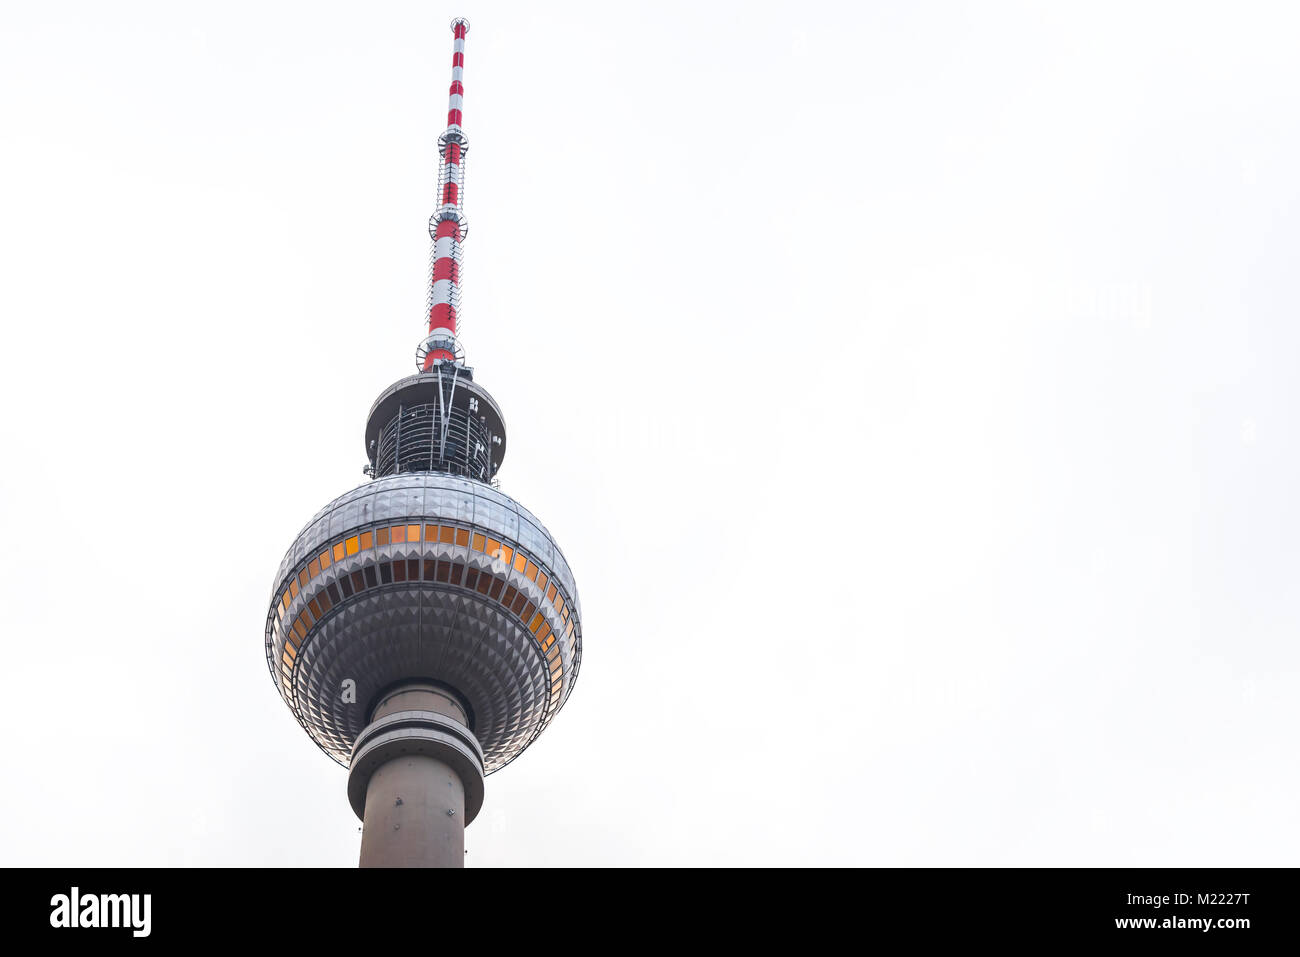 Fernsehturm, la tour de télévision de Berlin, Allemagne Banque D'Images